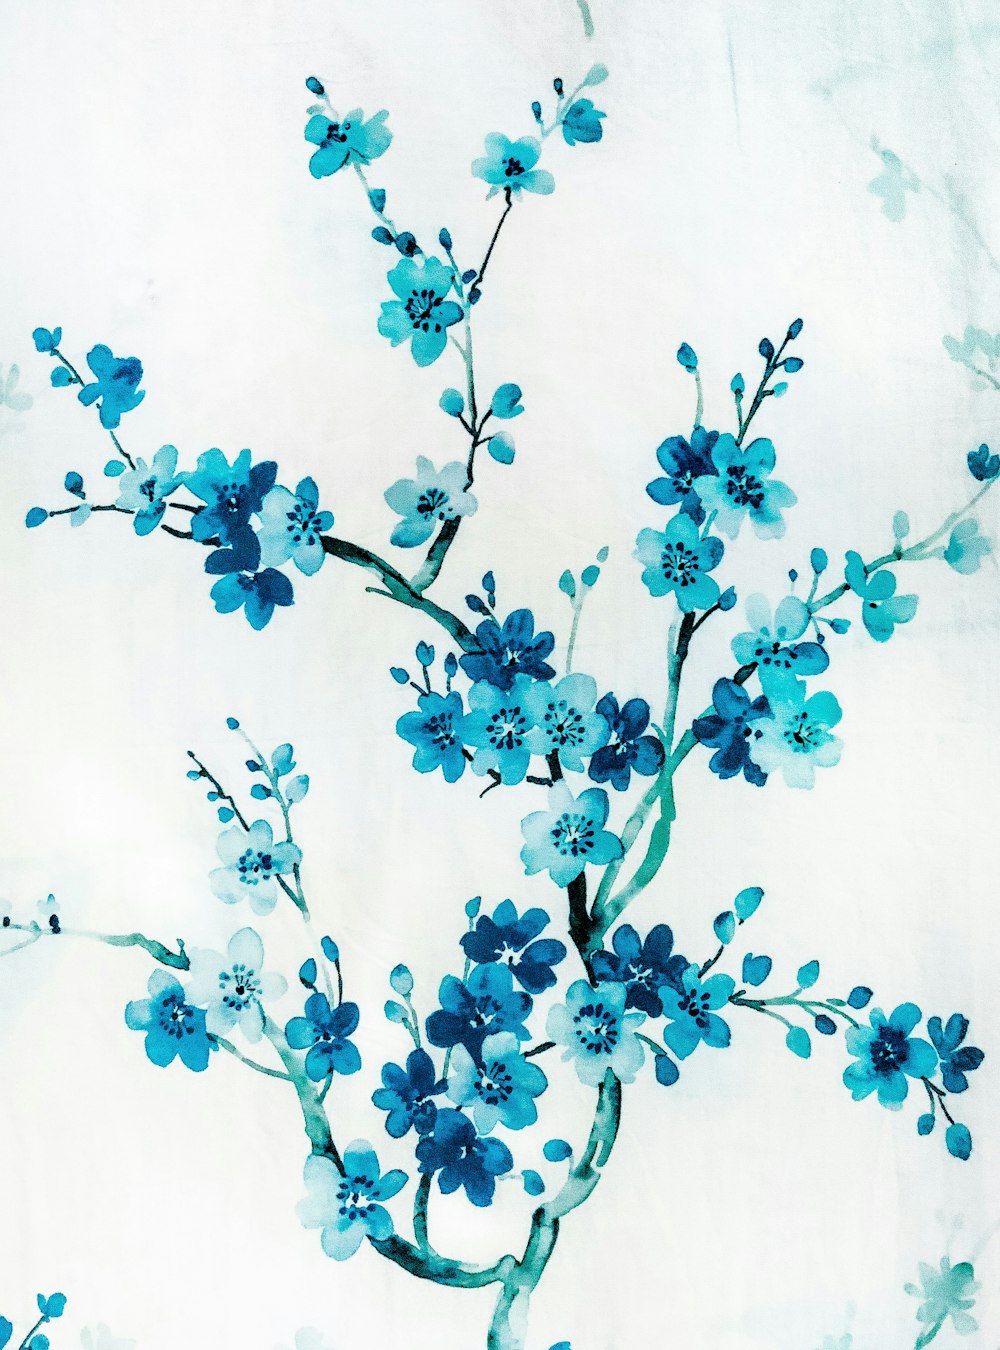 ein Gemälde von blauen Blumen auf weißem Hintergrund